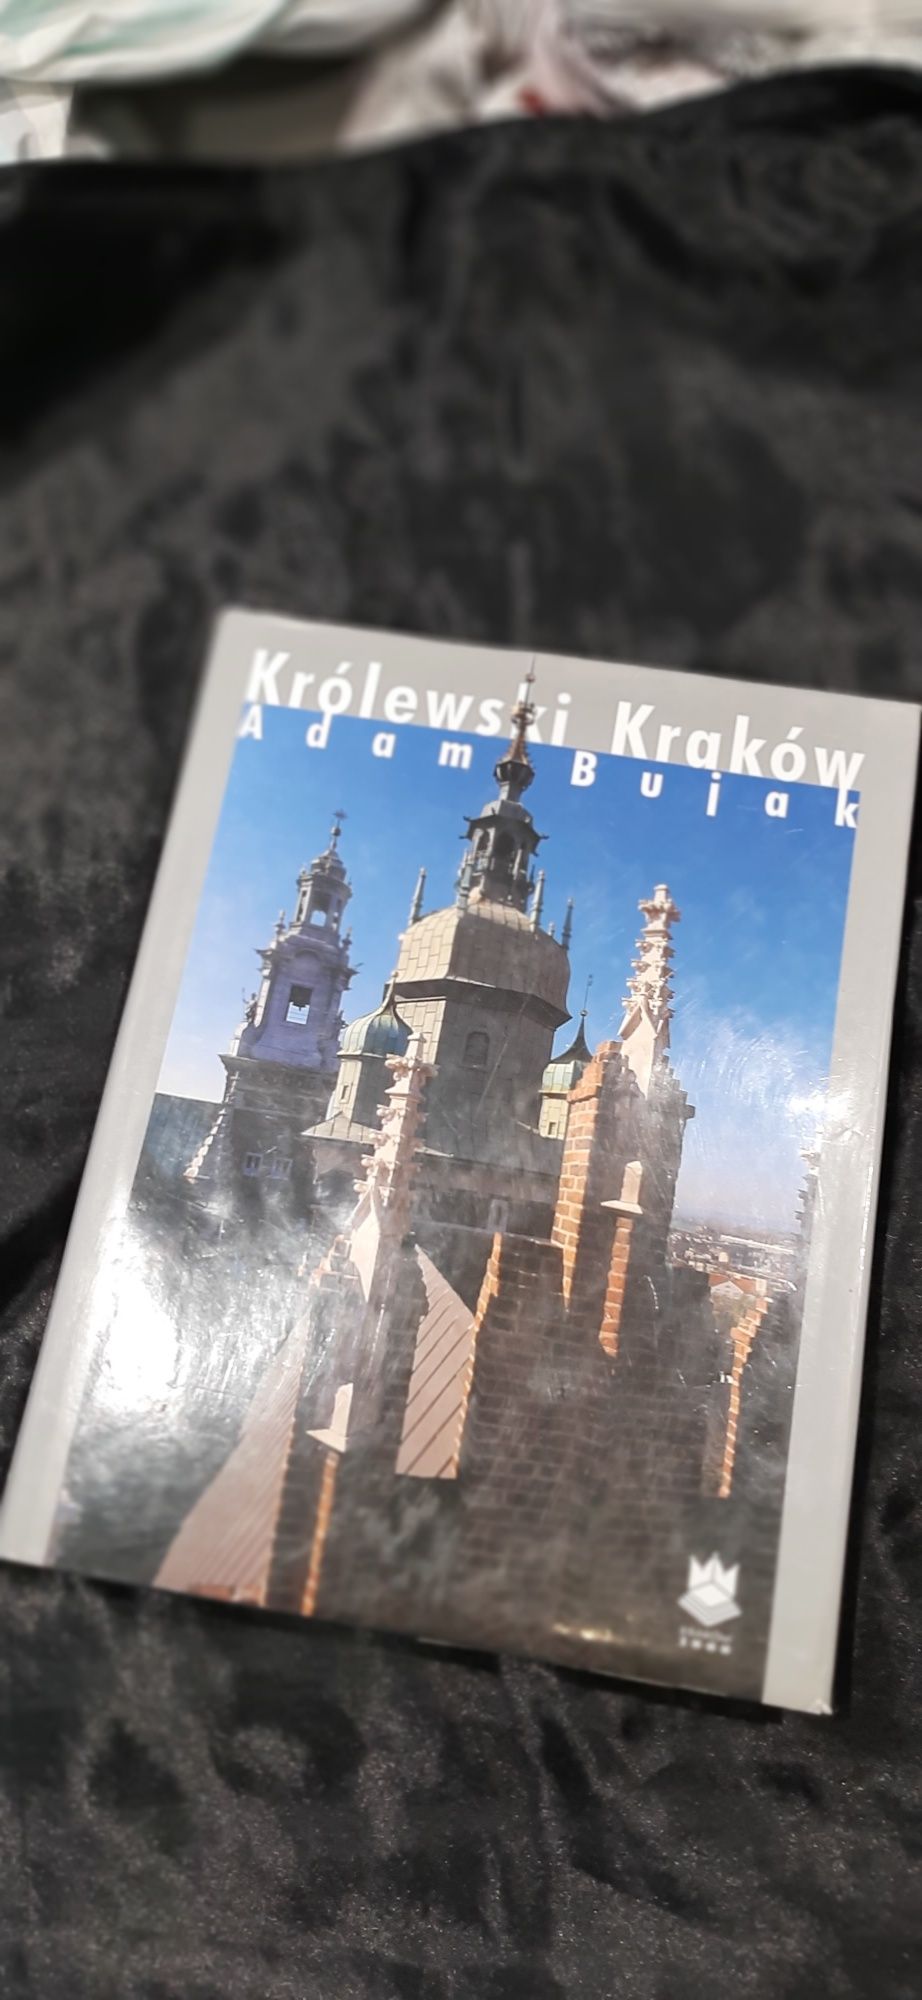 Królewski Kraków. A. Bujak